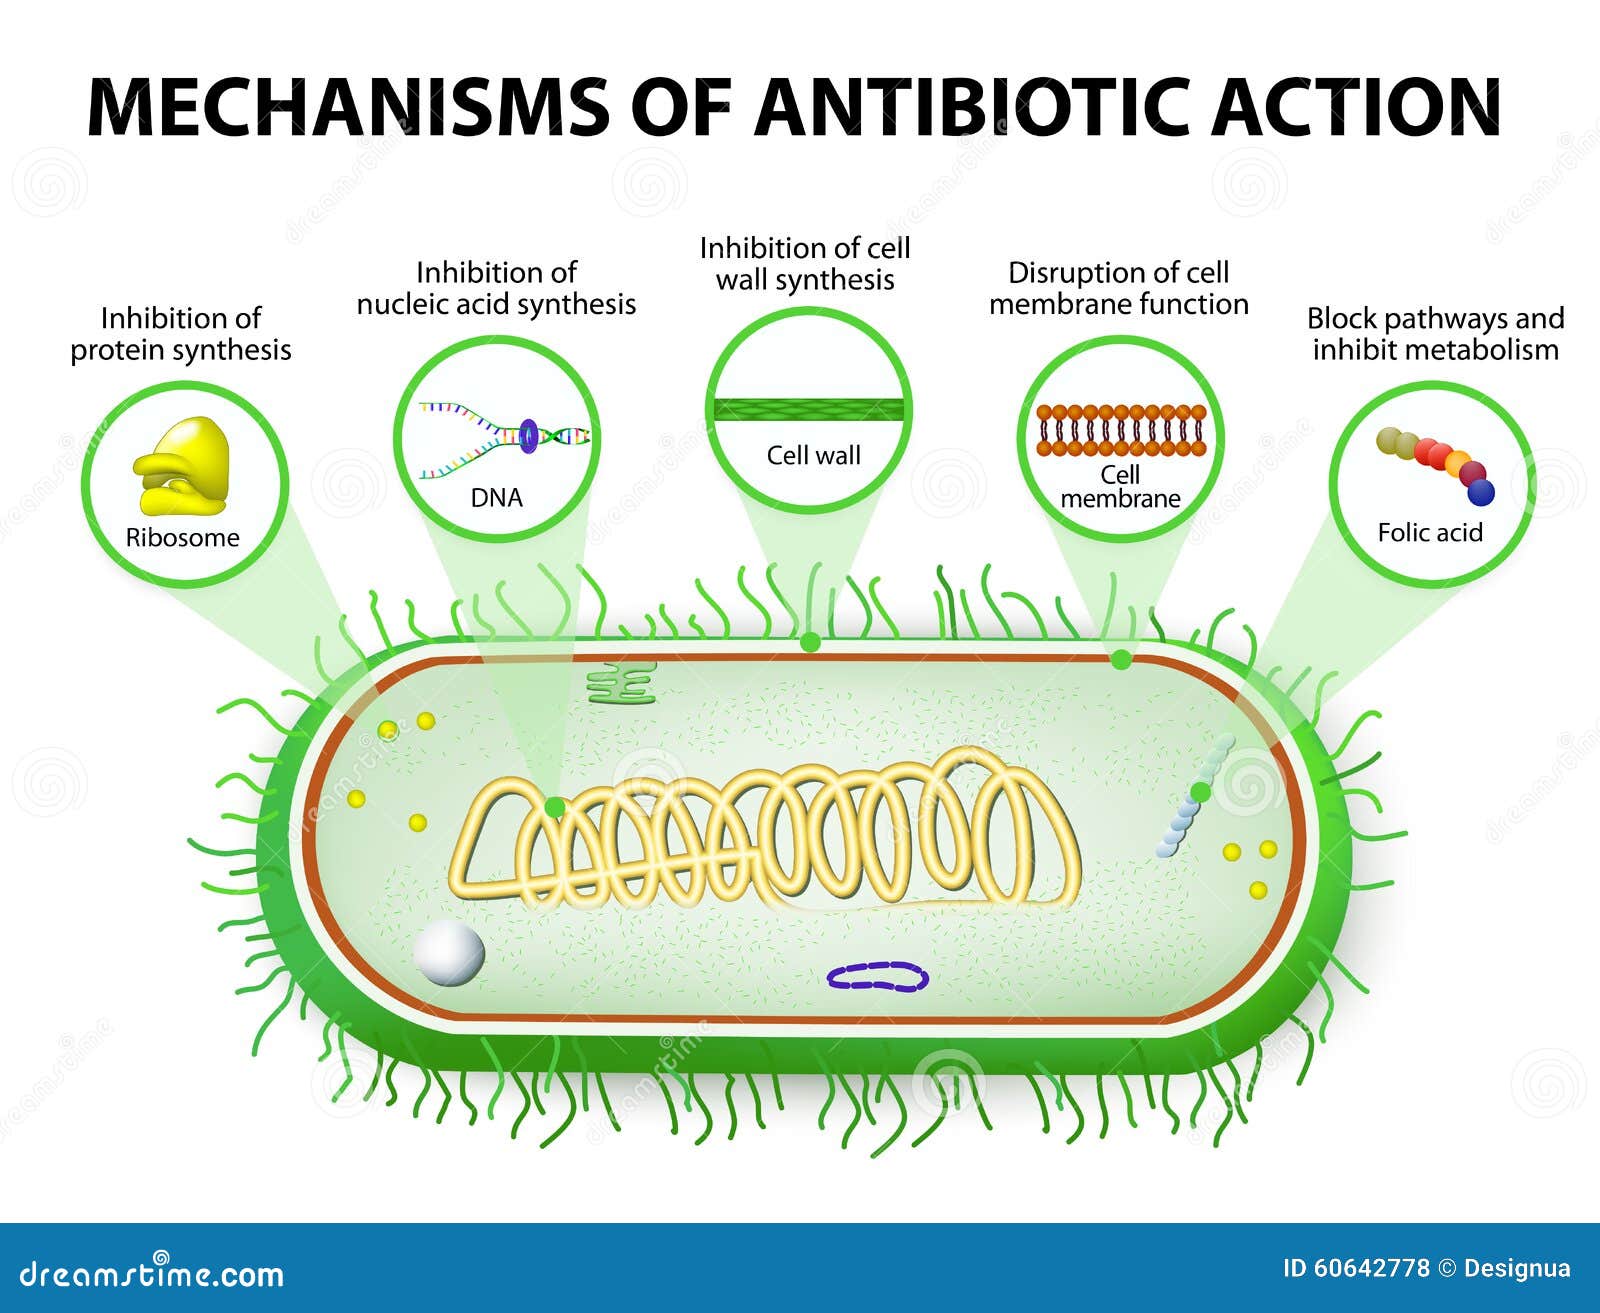 Погибают под действием антибиотиков. ДНК В бактериальной клетке. Антибиотики и микроорганизмы. Механизм действия антибиотиков на бактерии.